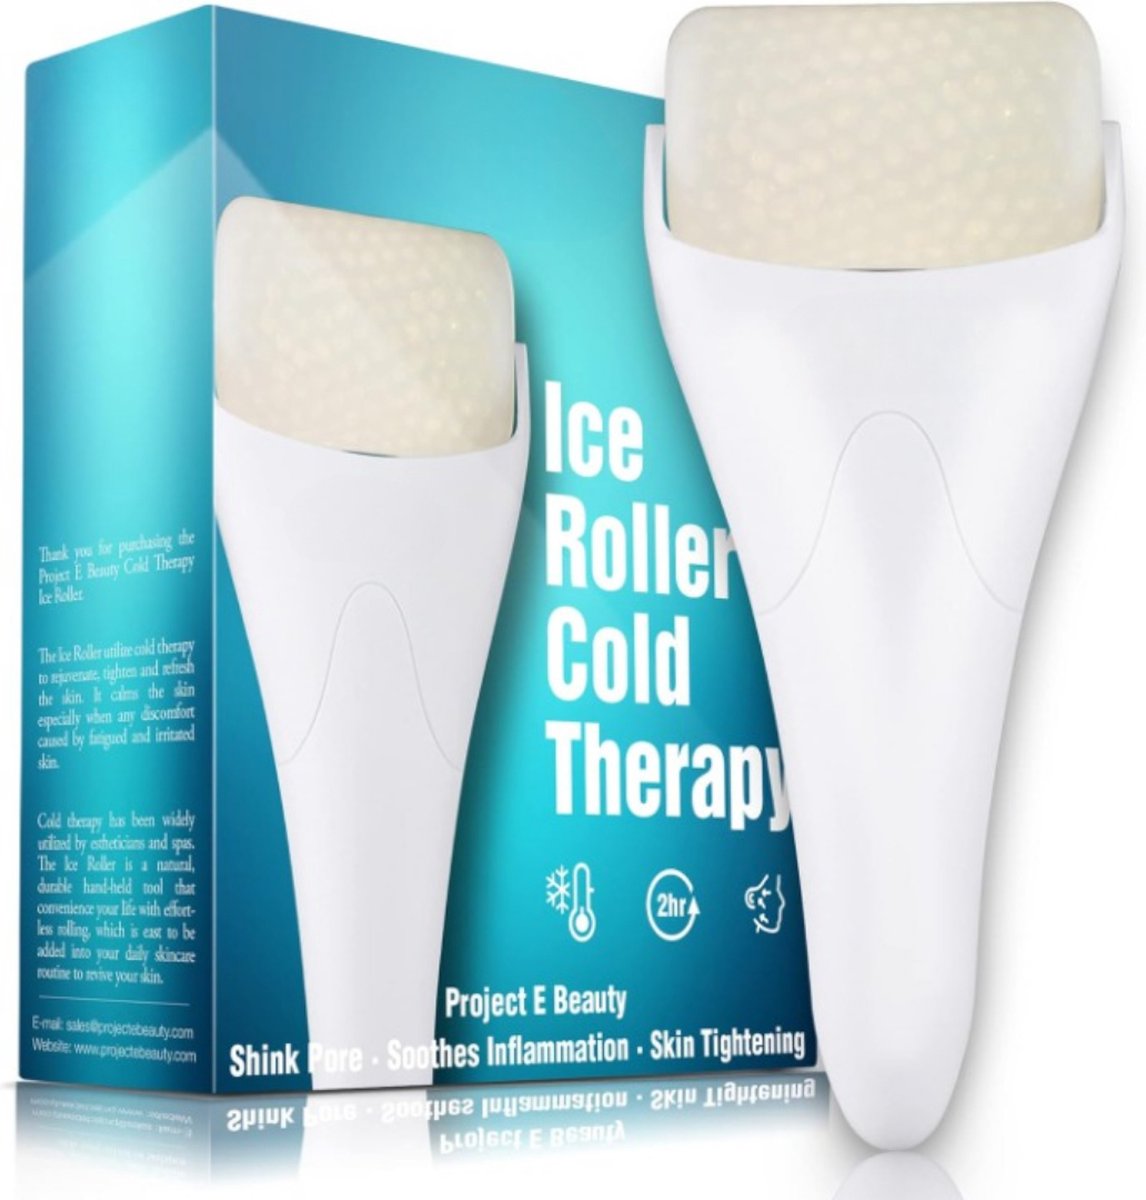 Ice Roller Cold Therapy - Vermindert wallen & donkere kringen, verstevigt de huid, vermindert rimpels, verheldert de huid, verlicht pijn, spierpijn & roodheid